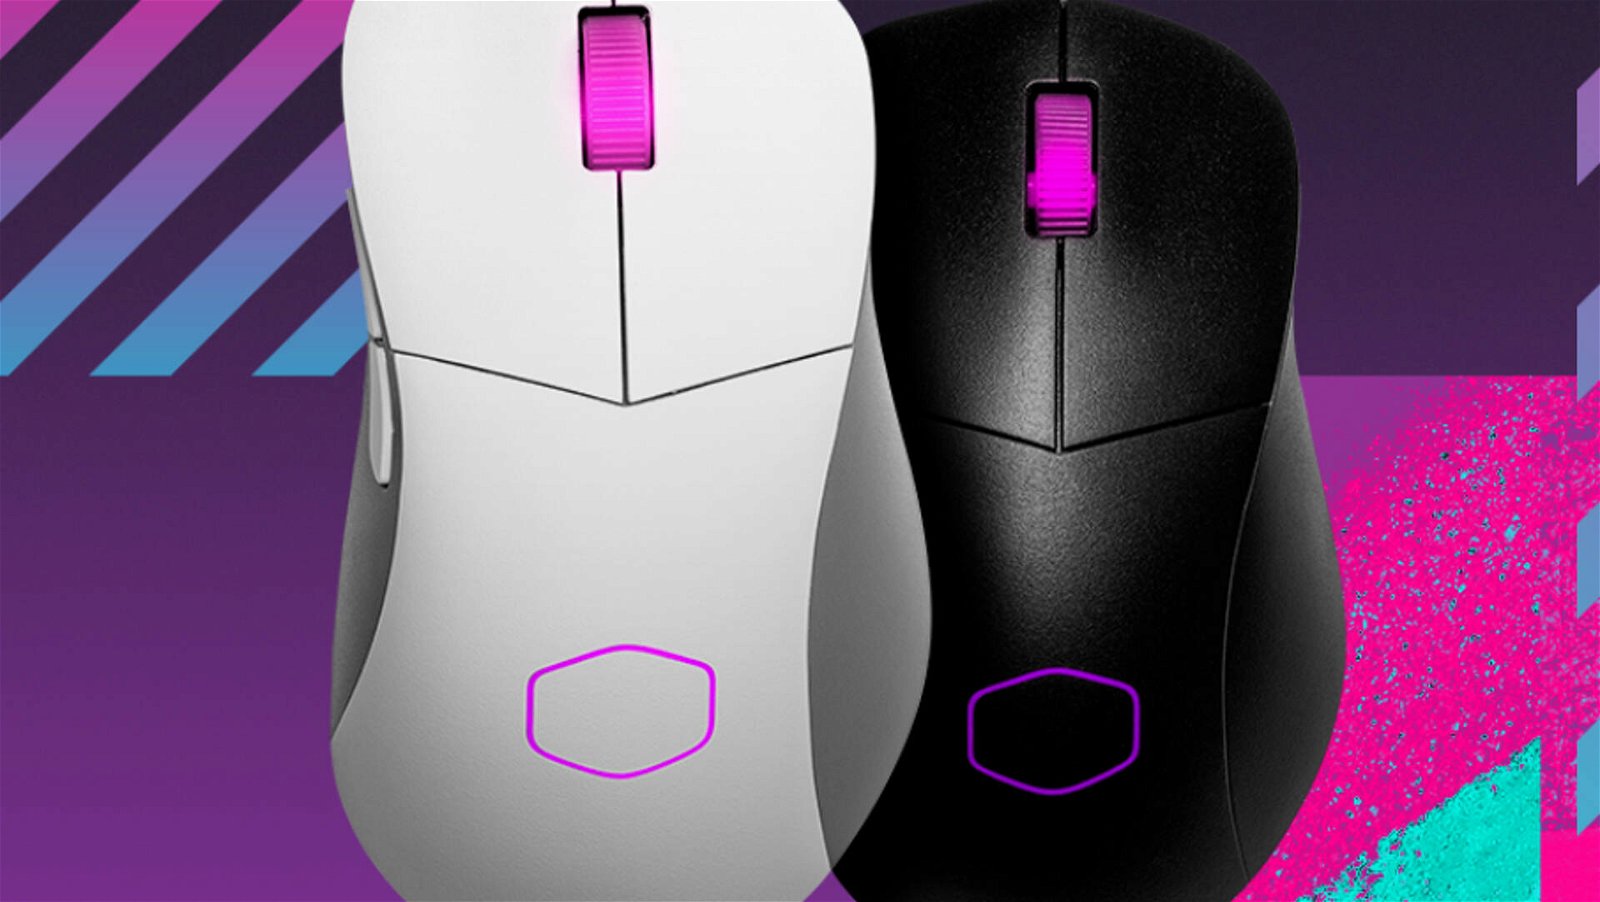 Immagine di Cooler Master, design innovativo e leggero per i nuovi mouse gaming